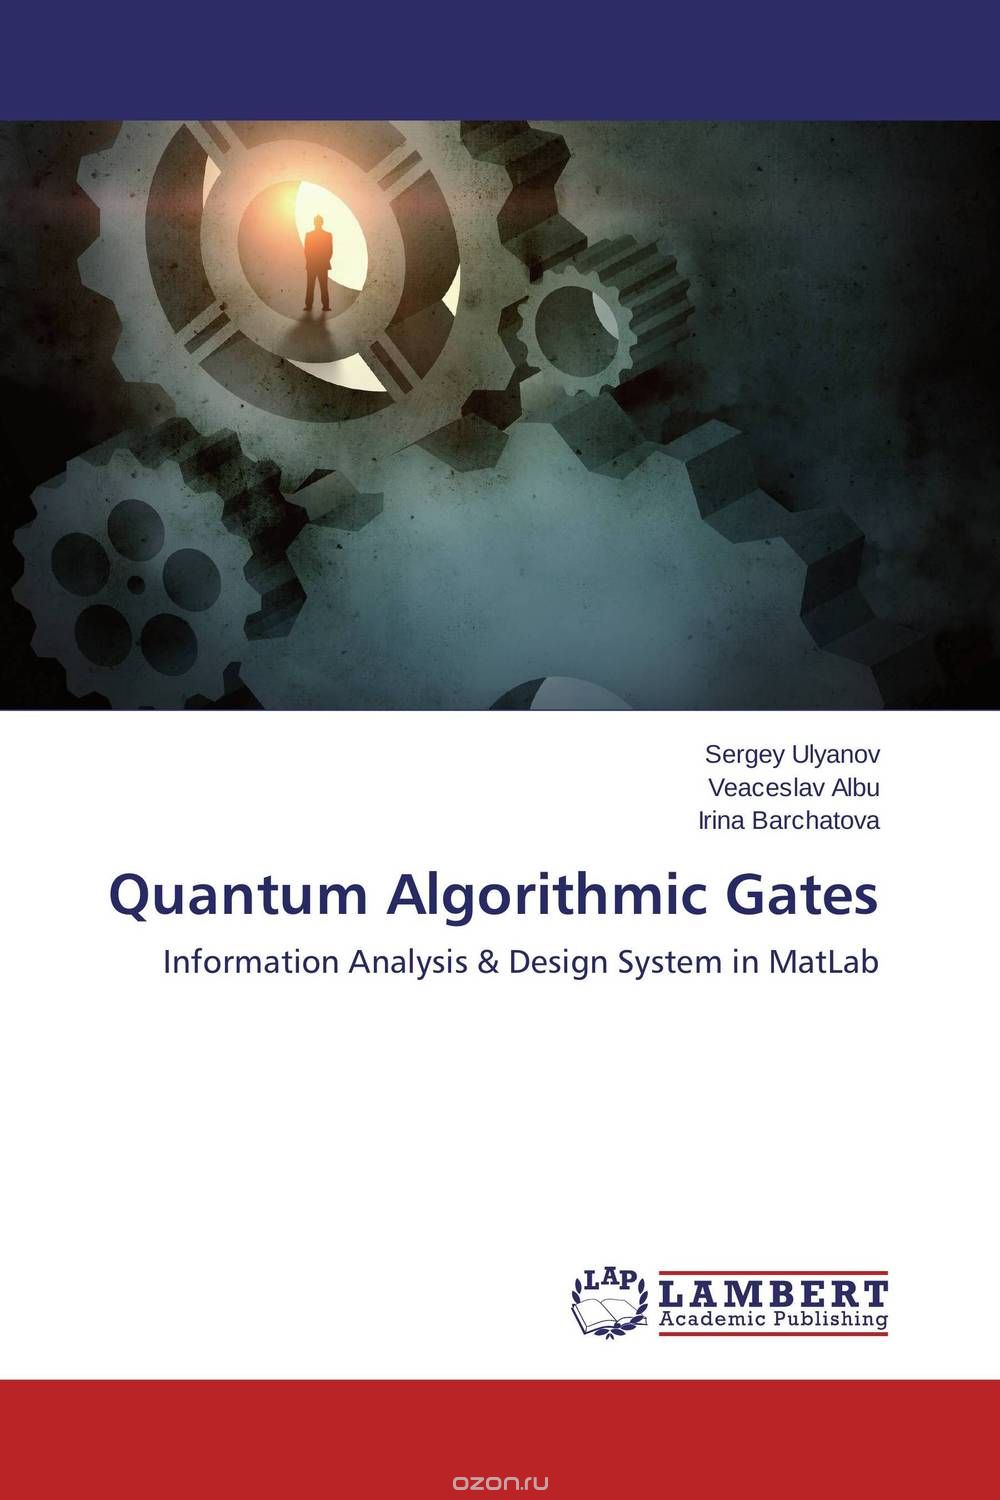 Скачать книгу "Quantum Algorithmic Gates"